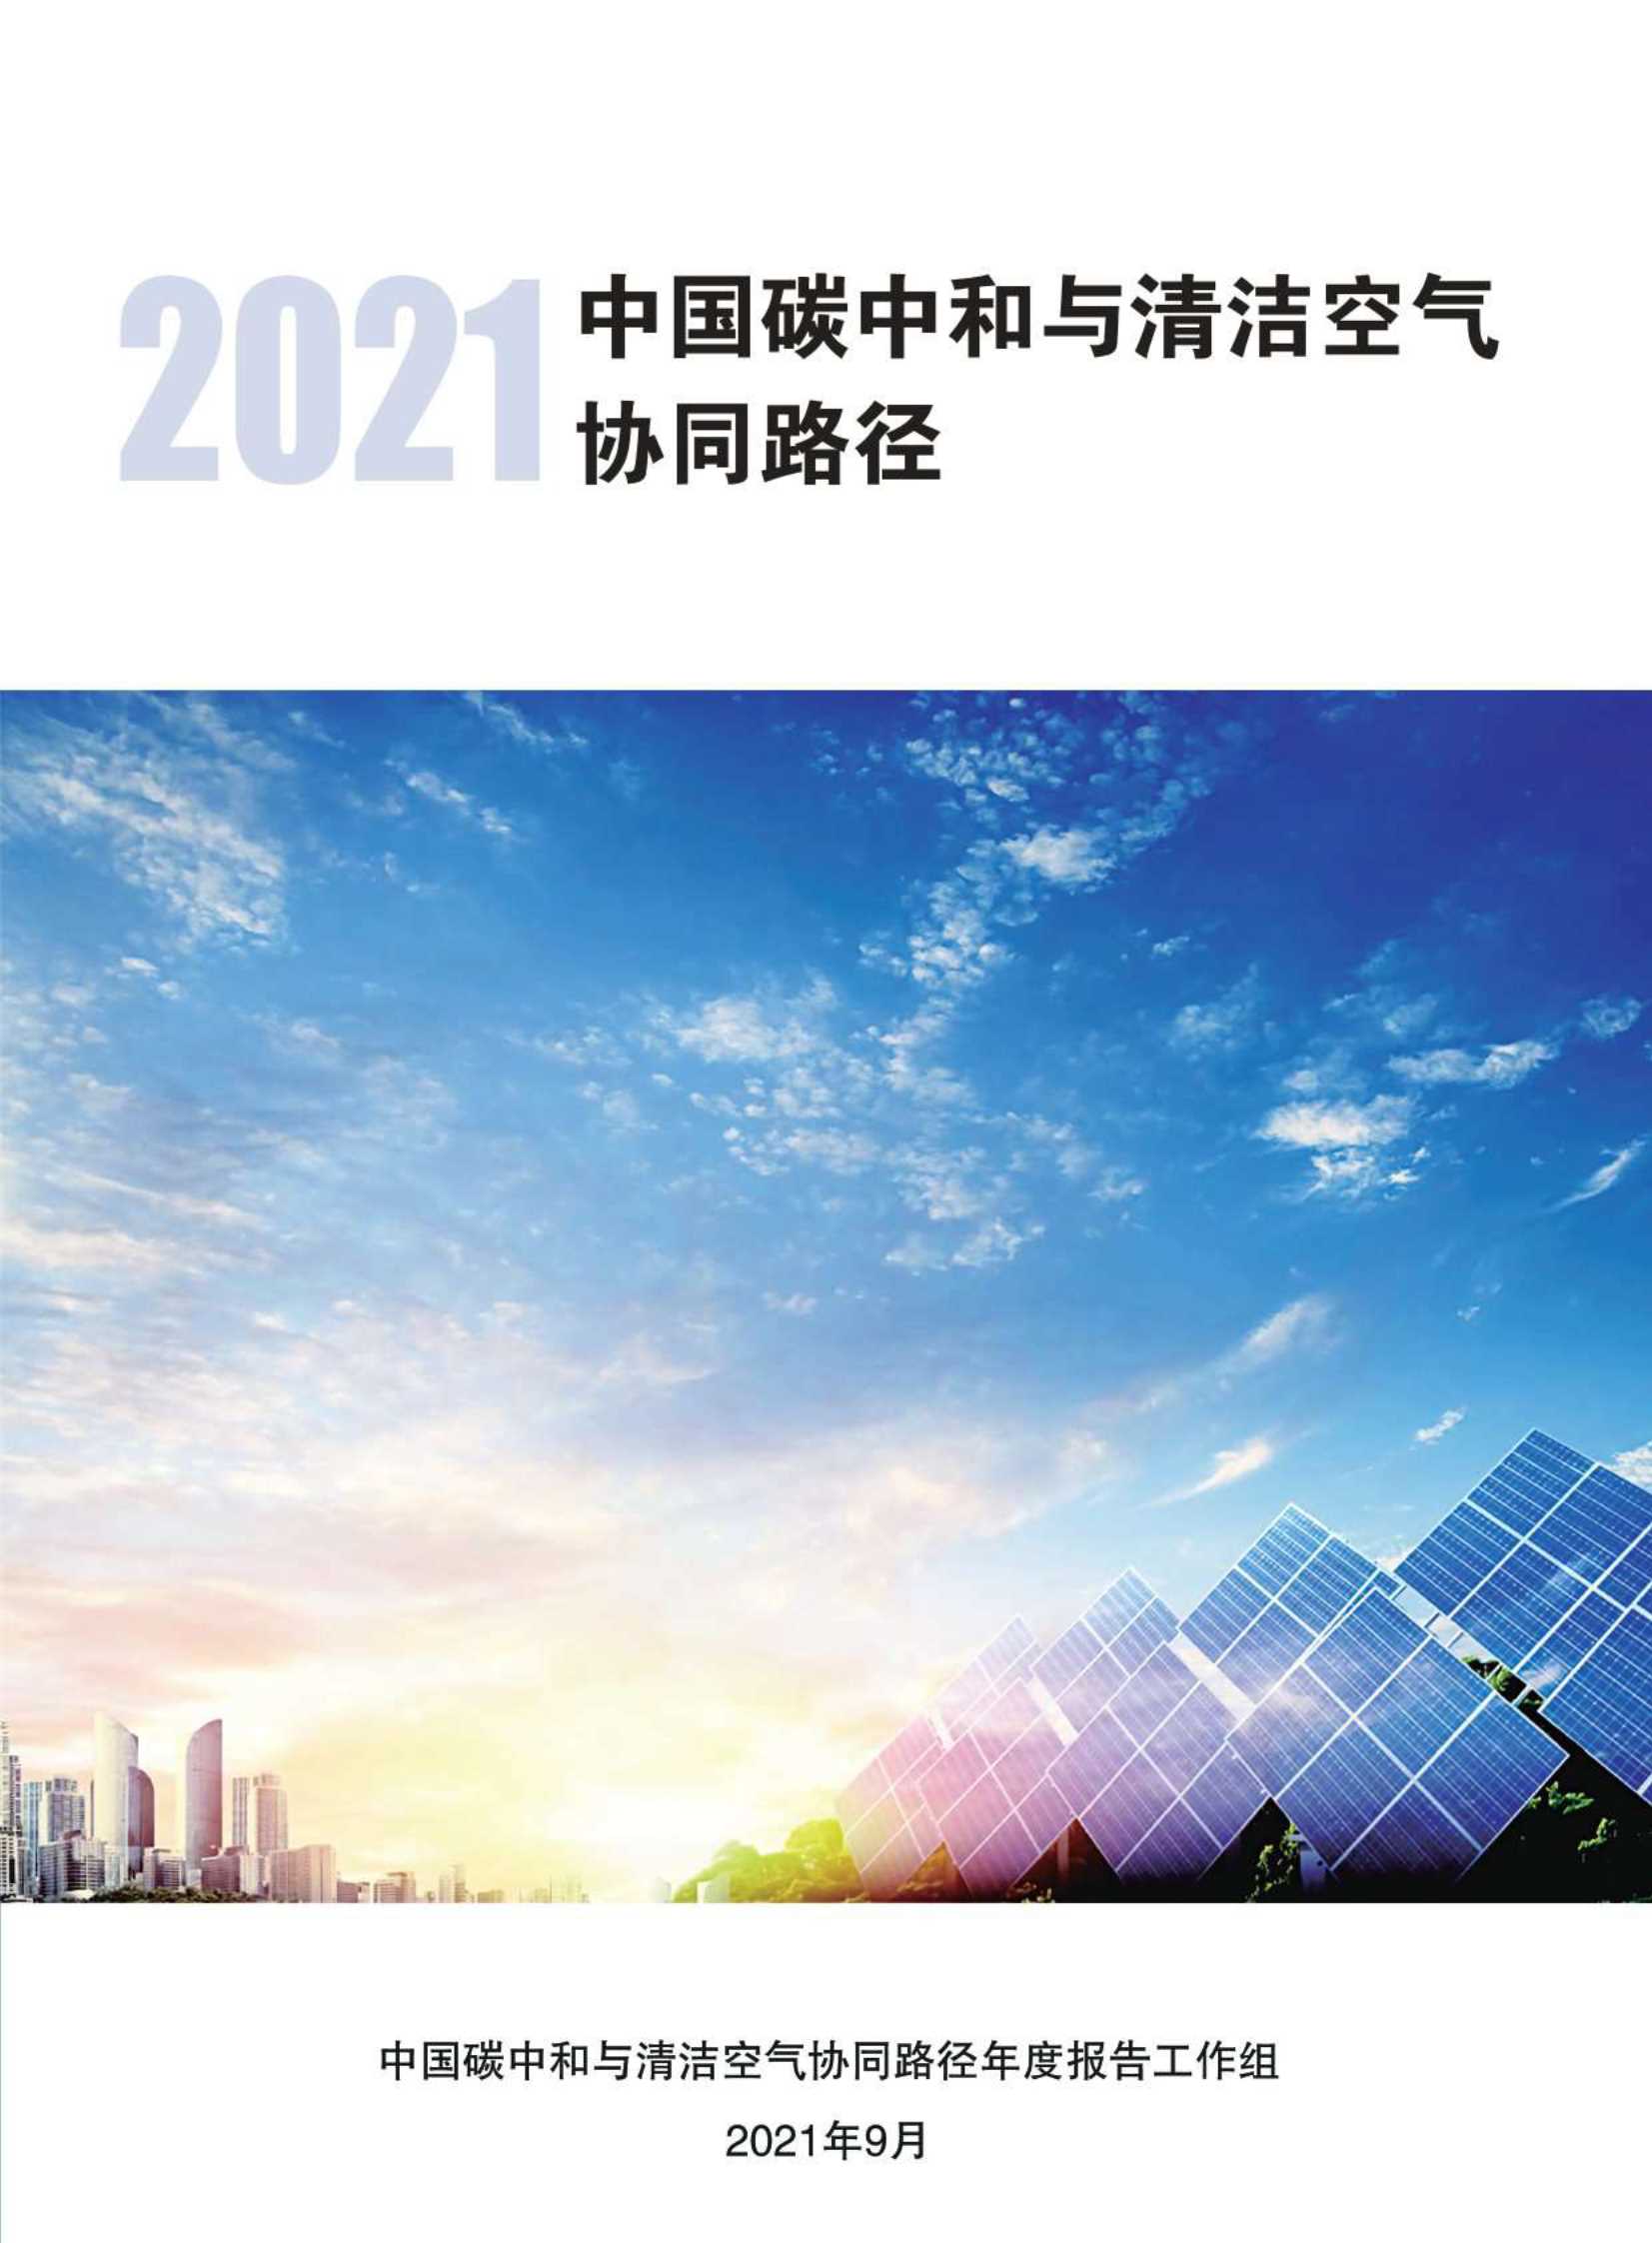 中国碳中和与清洁空气协同路径年度报告工作组-2021中国碳中和与清洁空气协同路径-2021.10-90页